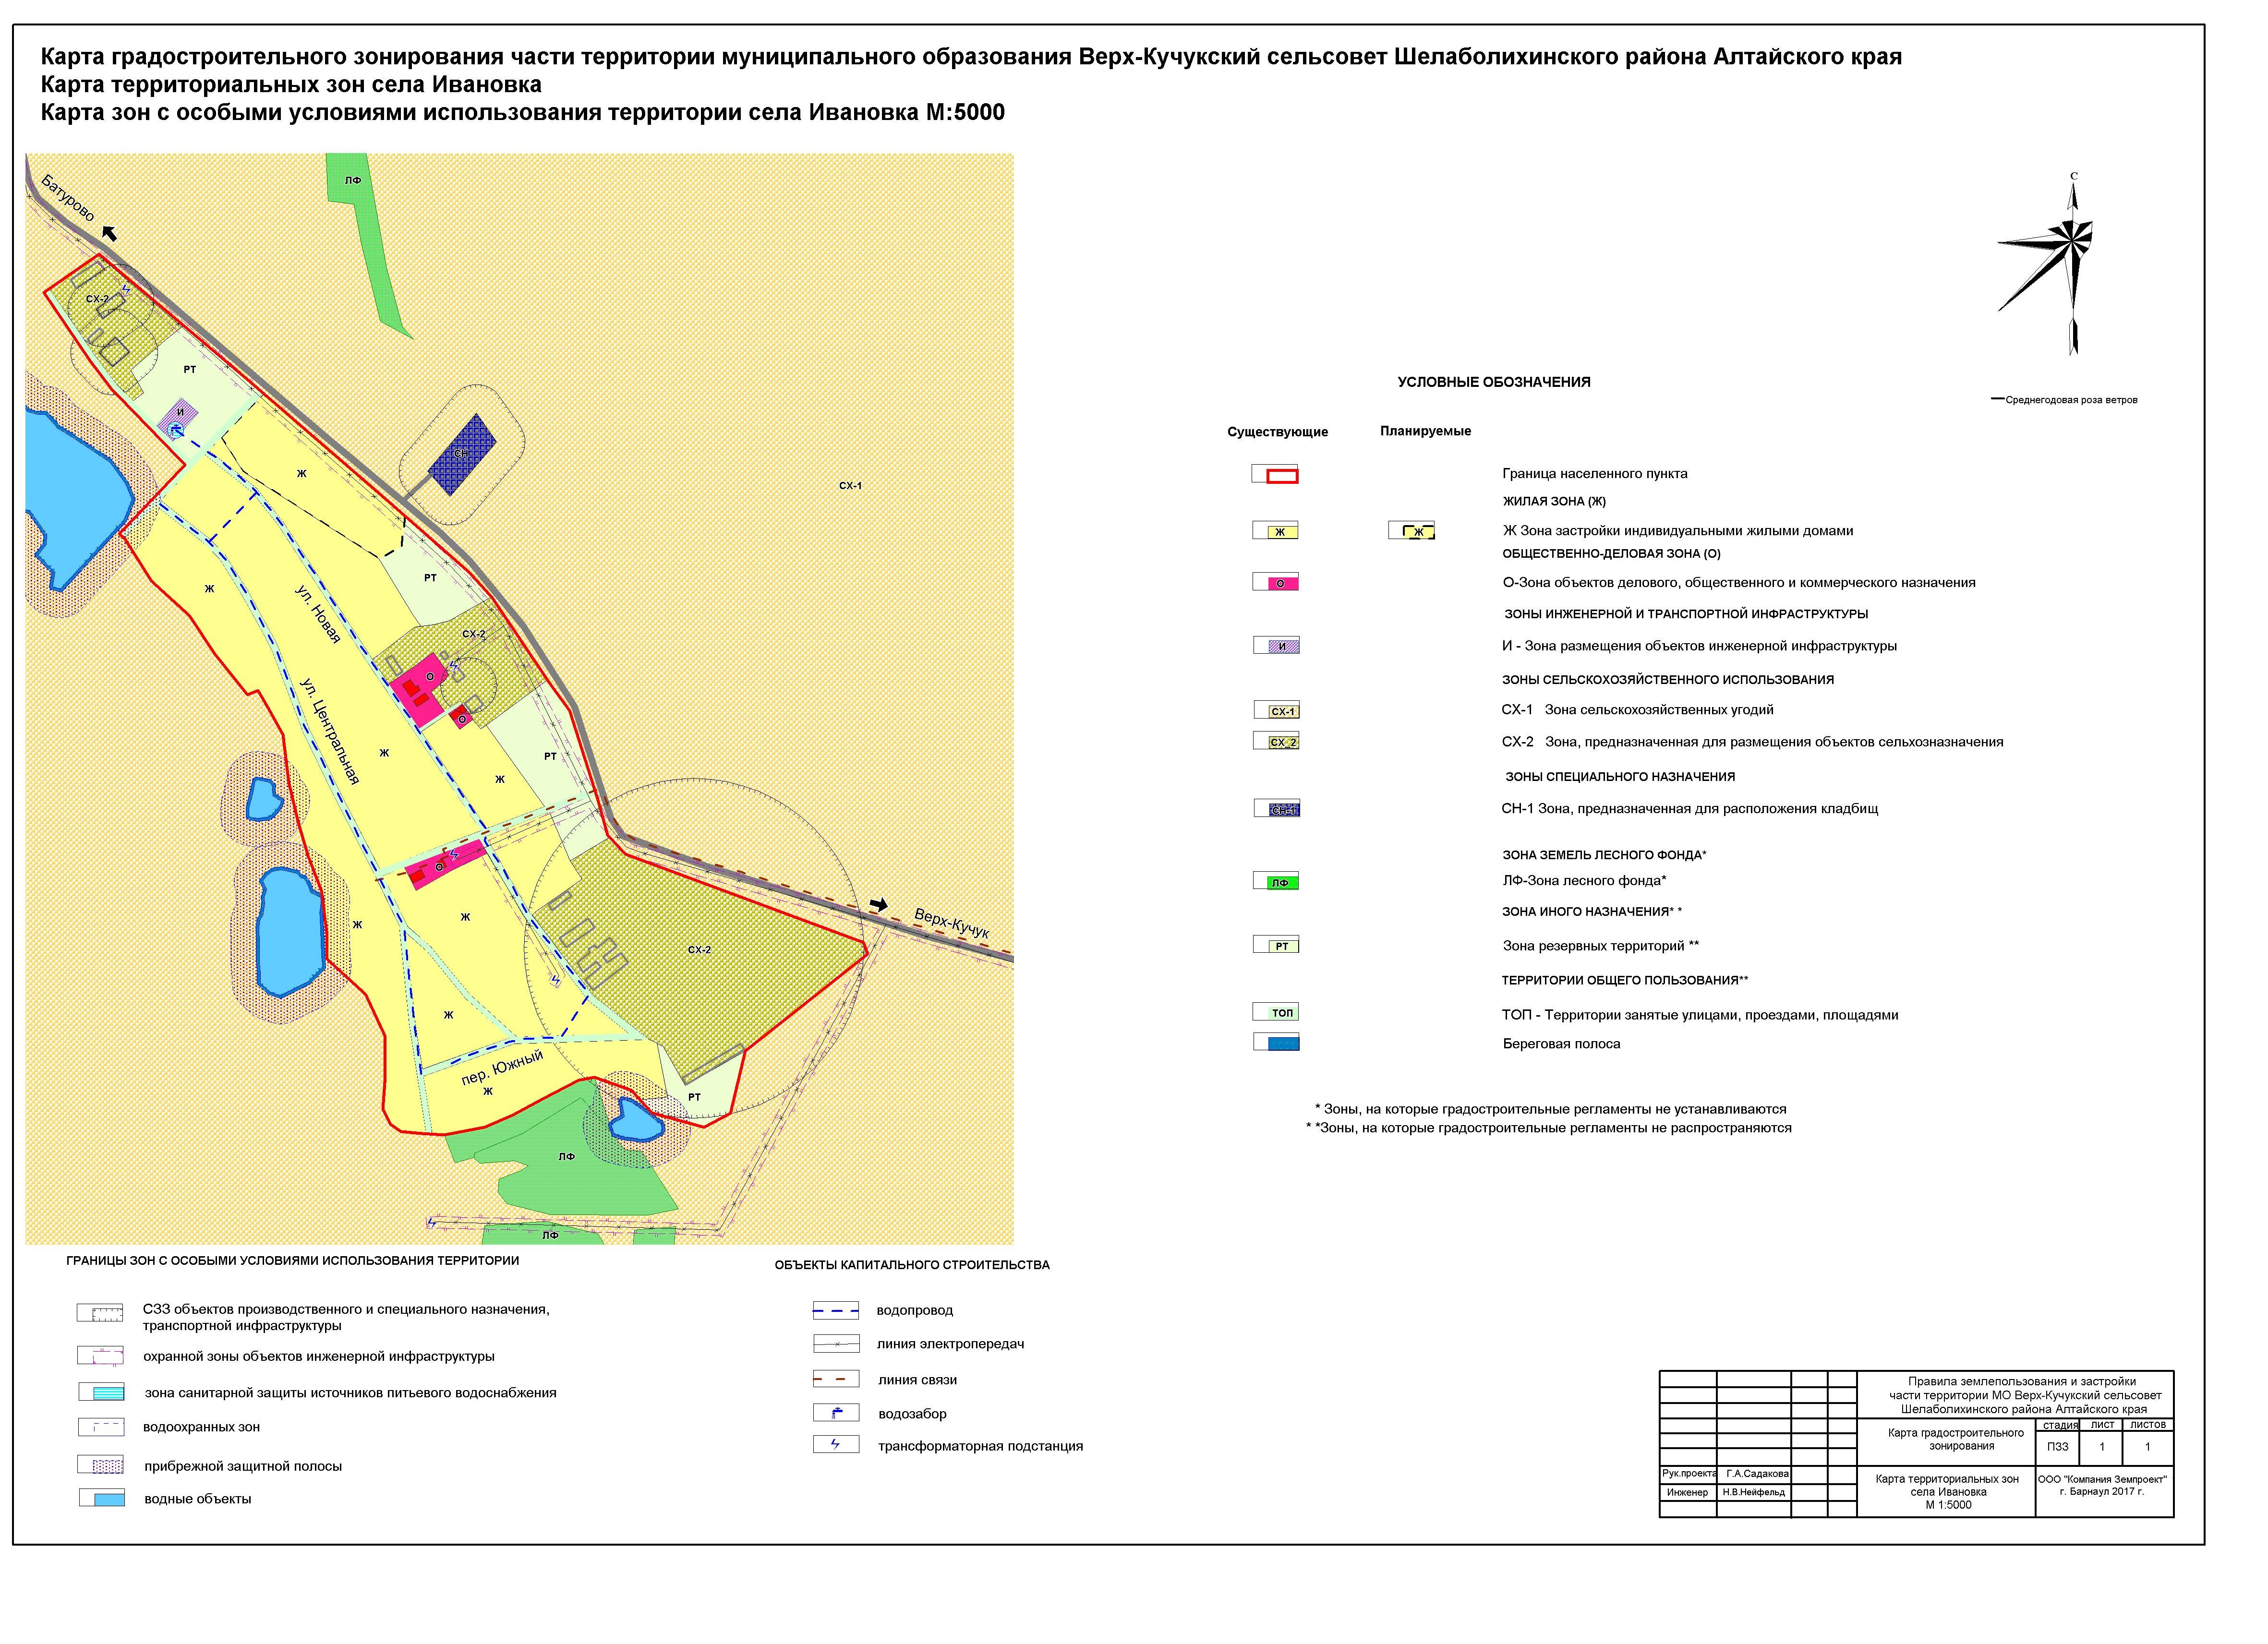 Документы территориального зонирования. Документы градостроительного зонирования. Карта градостроительного зонирования города Ярославля. Градостроительная деятельность на землях населенных пунктов.